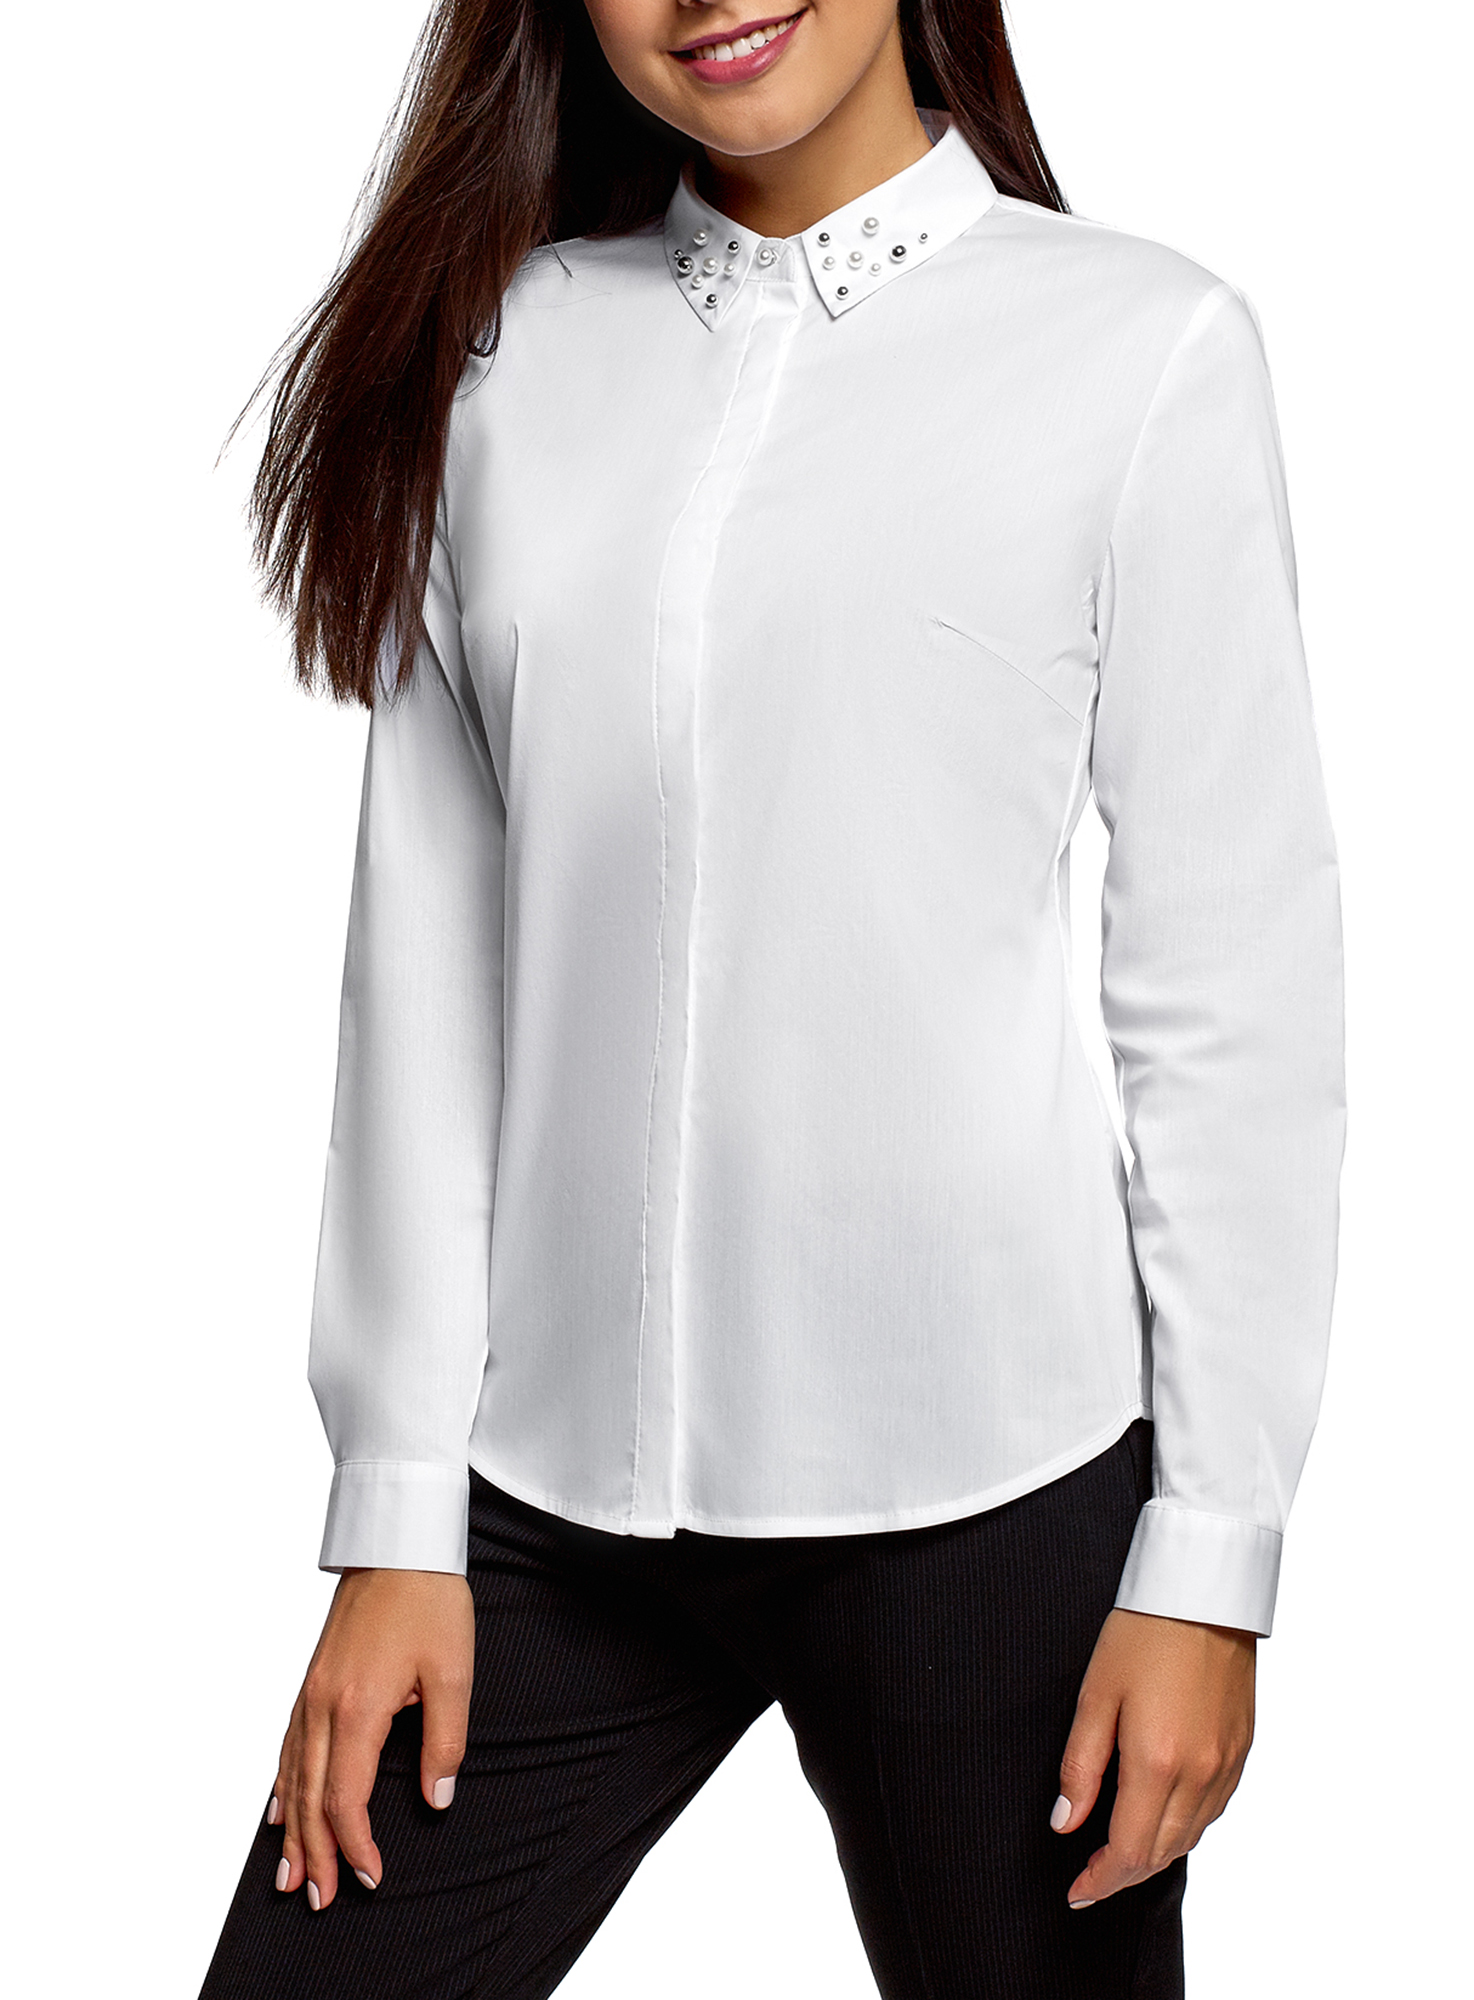 Где можно купить блузки. Белая блузка. Рубашка женская. Блузка с длинным рукавом. Белая блузка женская.